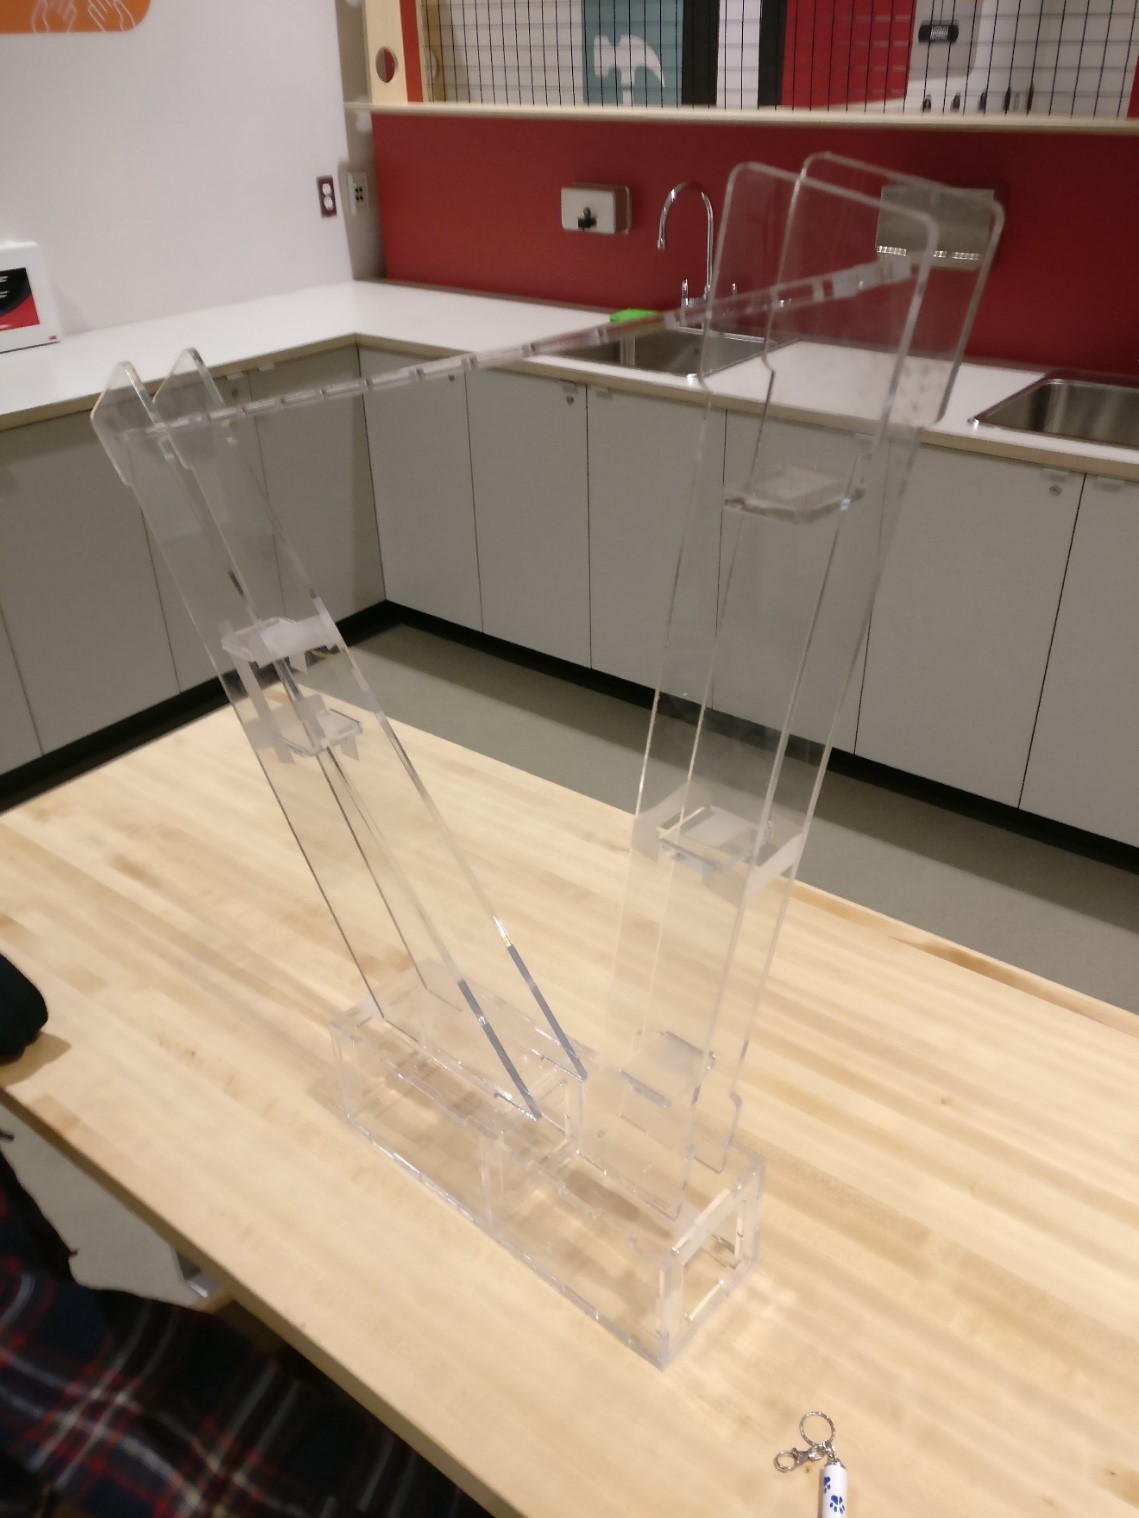 Un cadre en plastique transparent en forme de harpe repose sur une table.